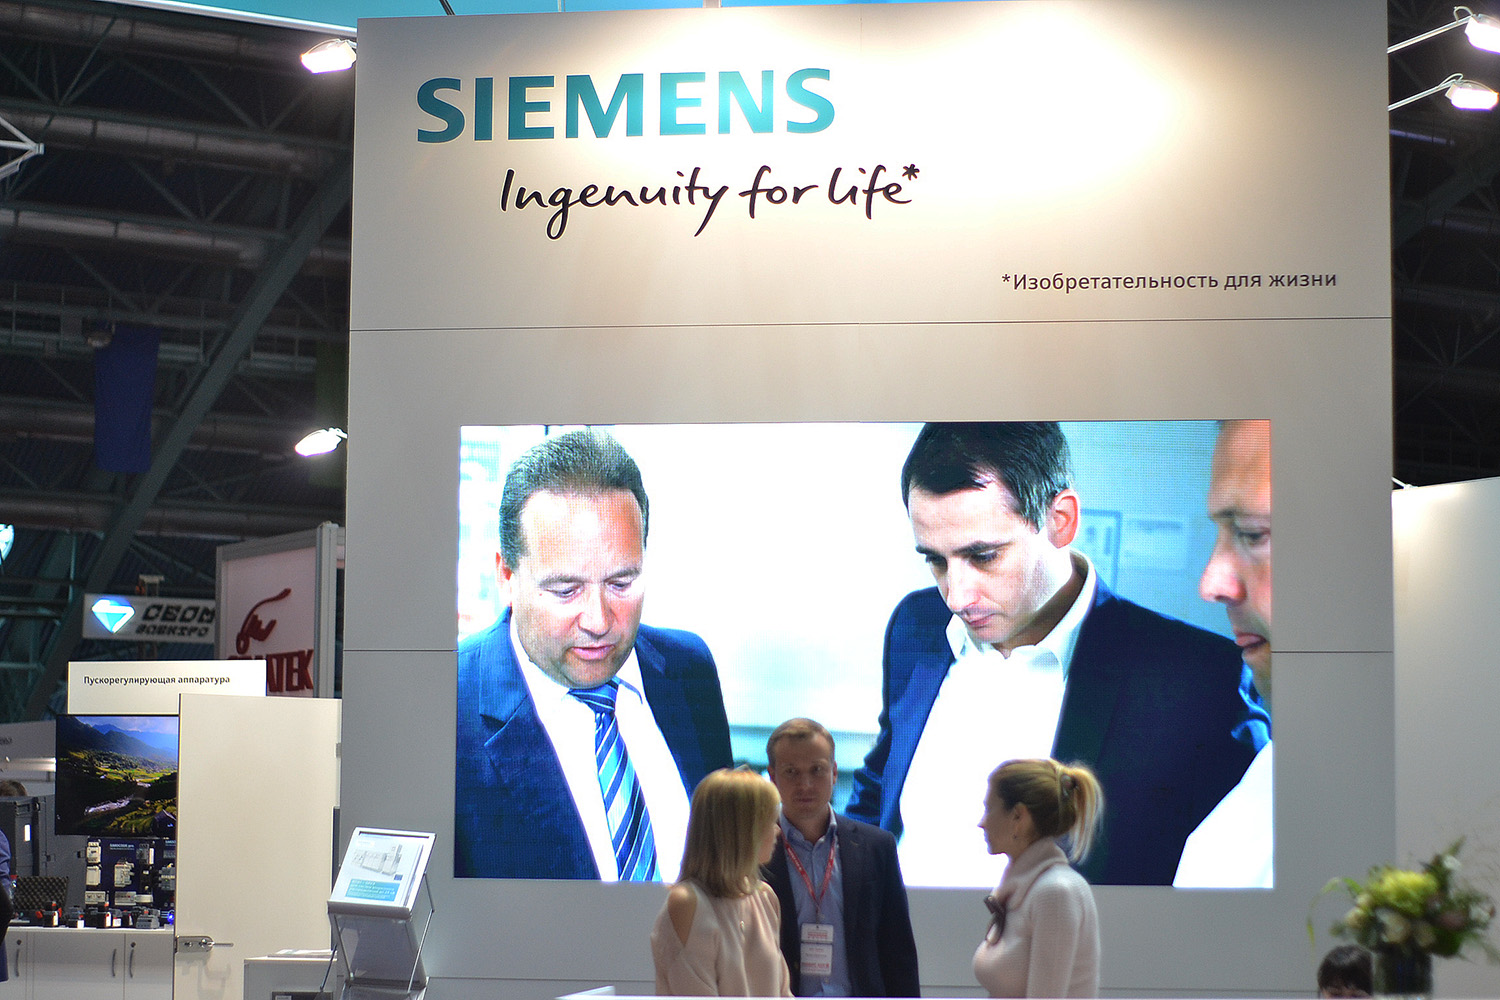 Siemens AG – немецкий концерн, работающий в области электротехники, электроники, энергетического оборудования, транспорта, медицинского оборудования и светотехники, а также специализированных услуг в различных областях промышленности, транспорта и связи